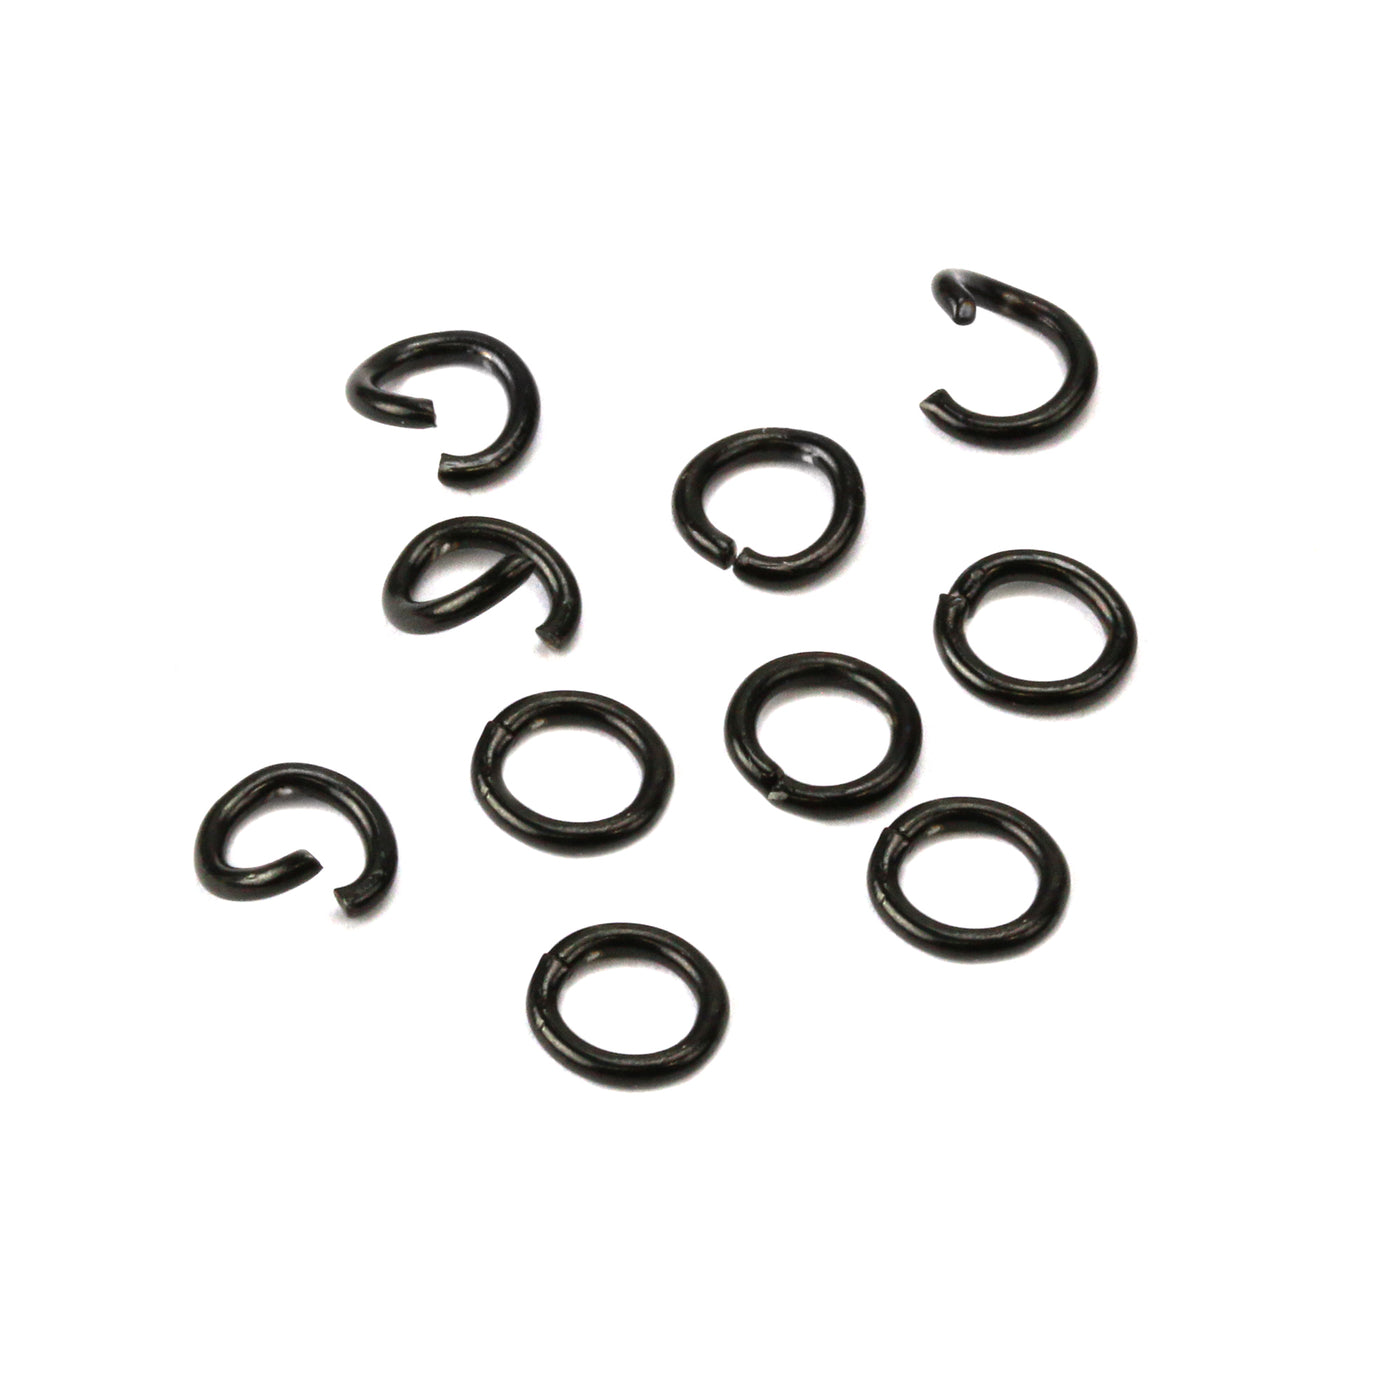 Buy Black jump rings - Black Stainless Steel rings